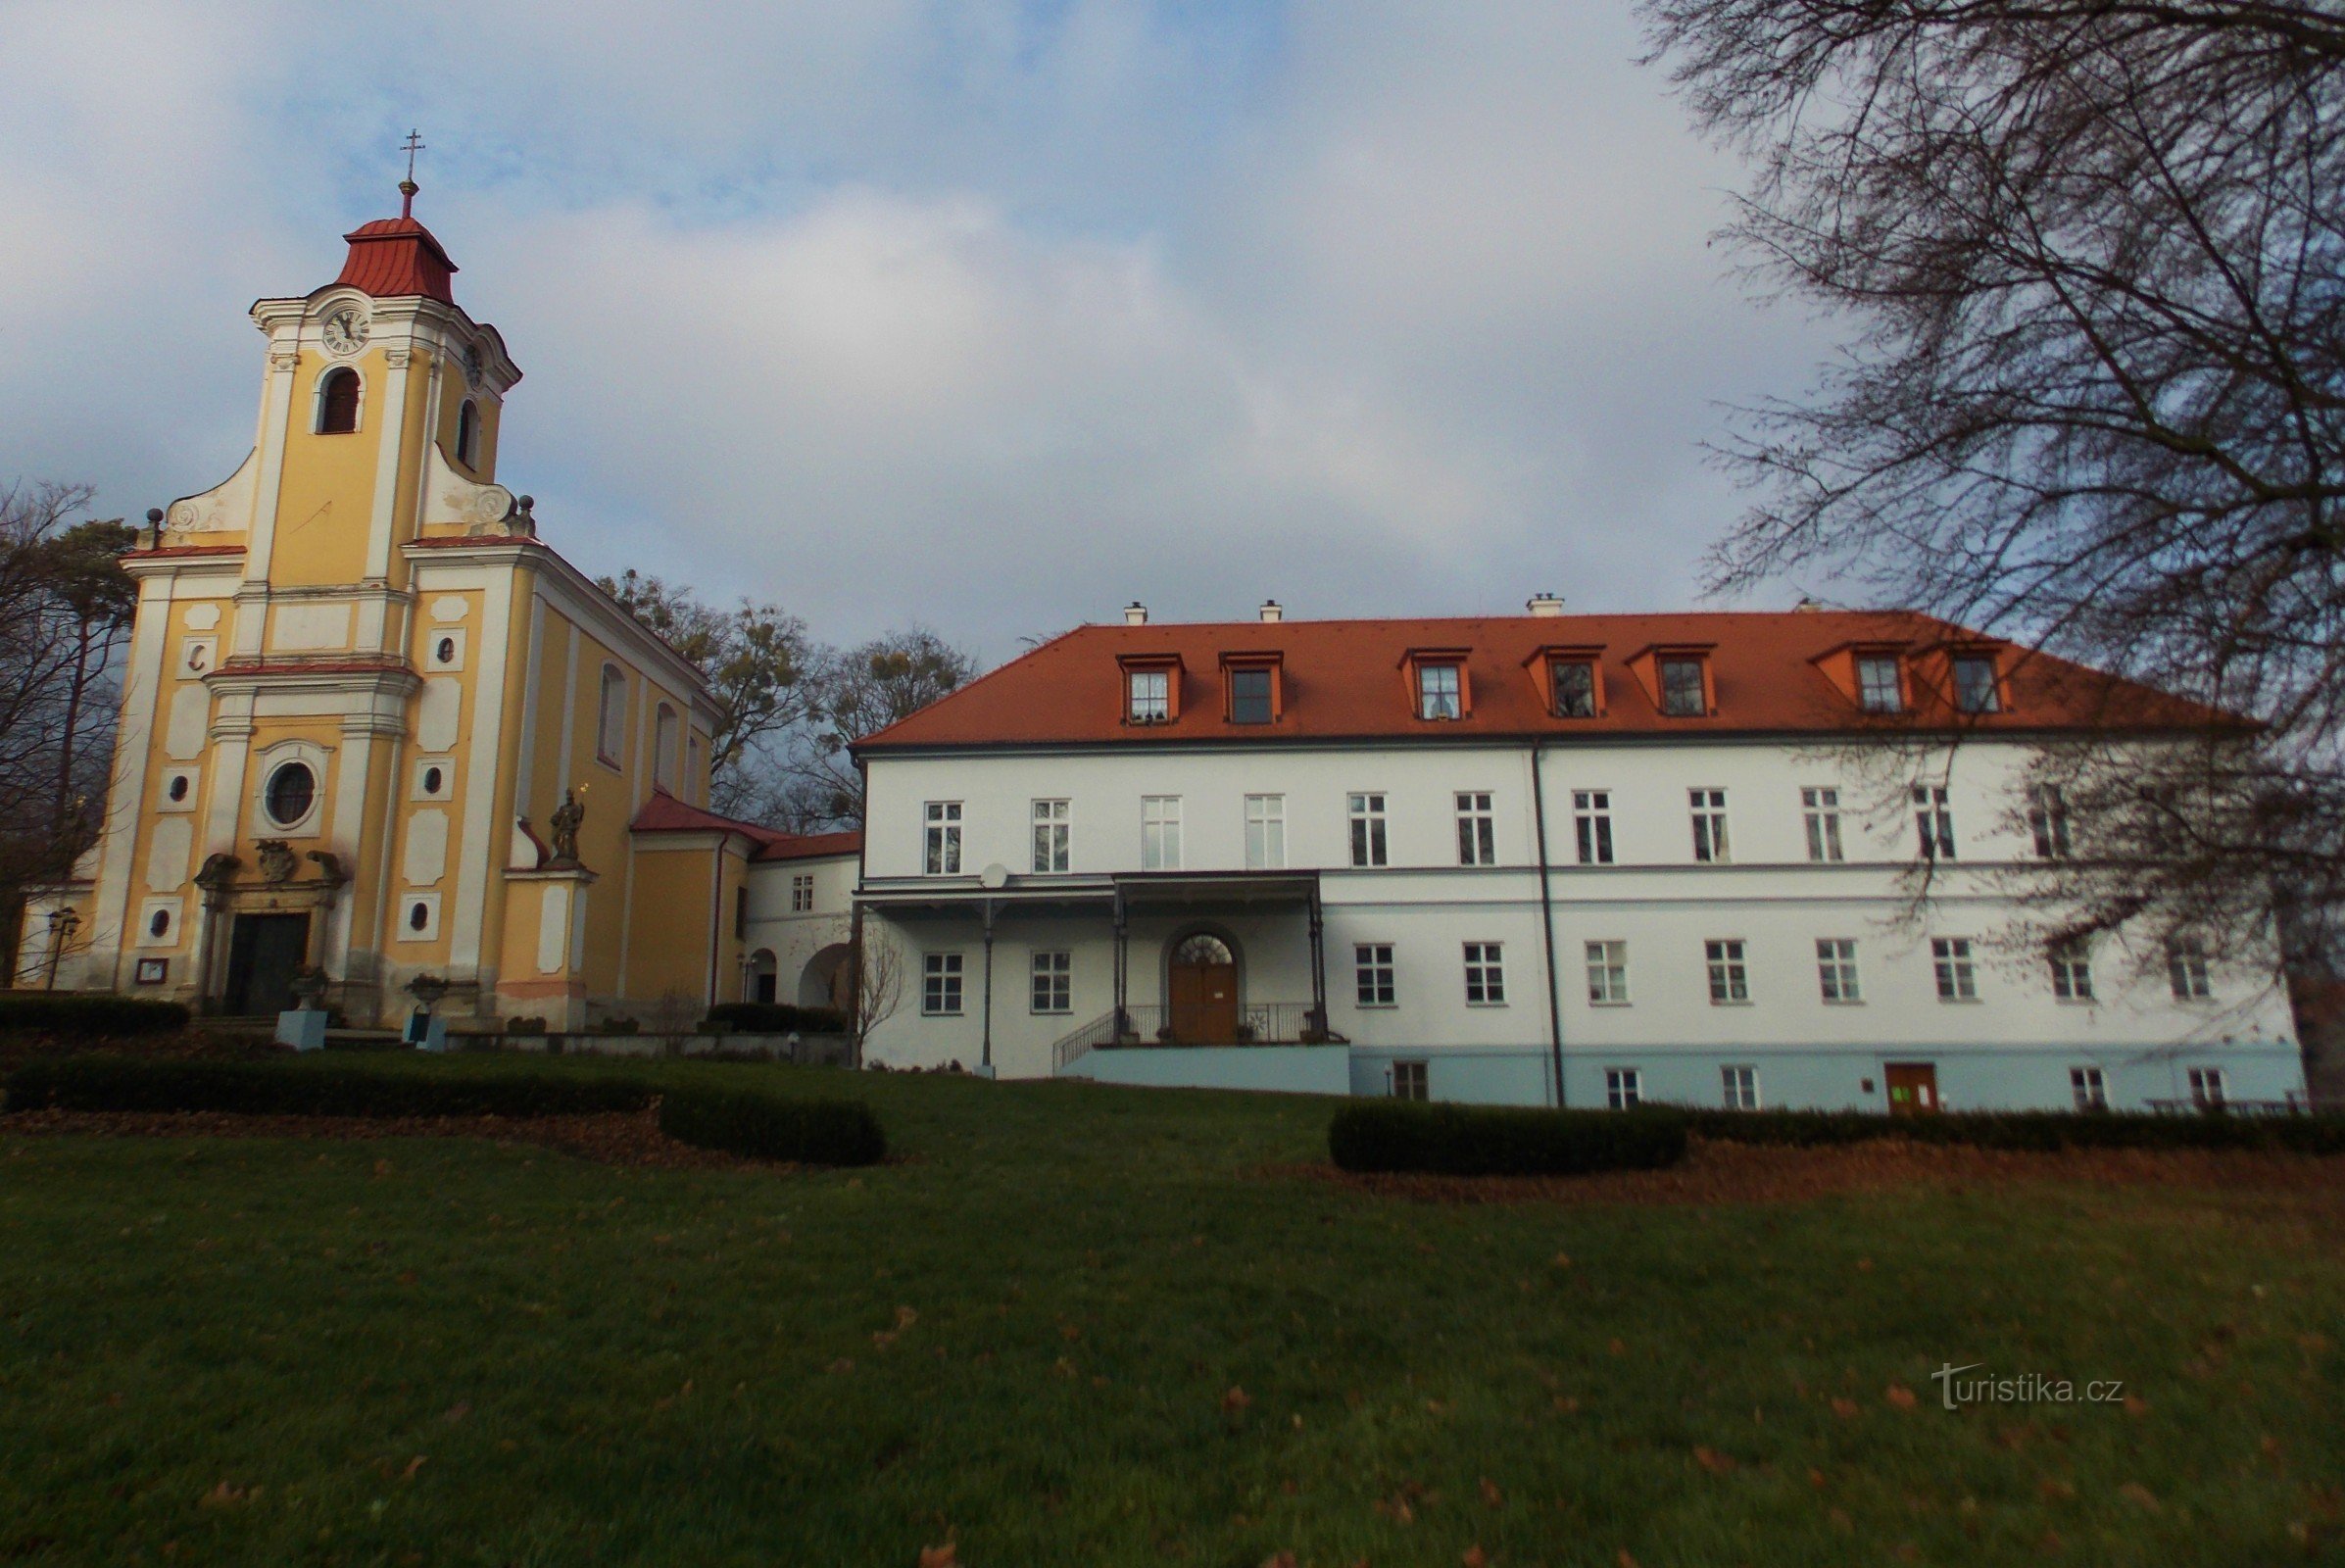 Teren zamku i kościoła w Pohořelice